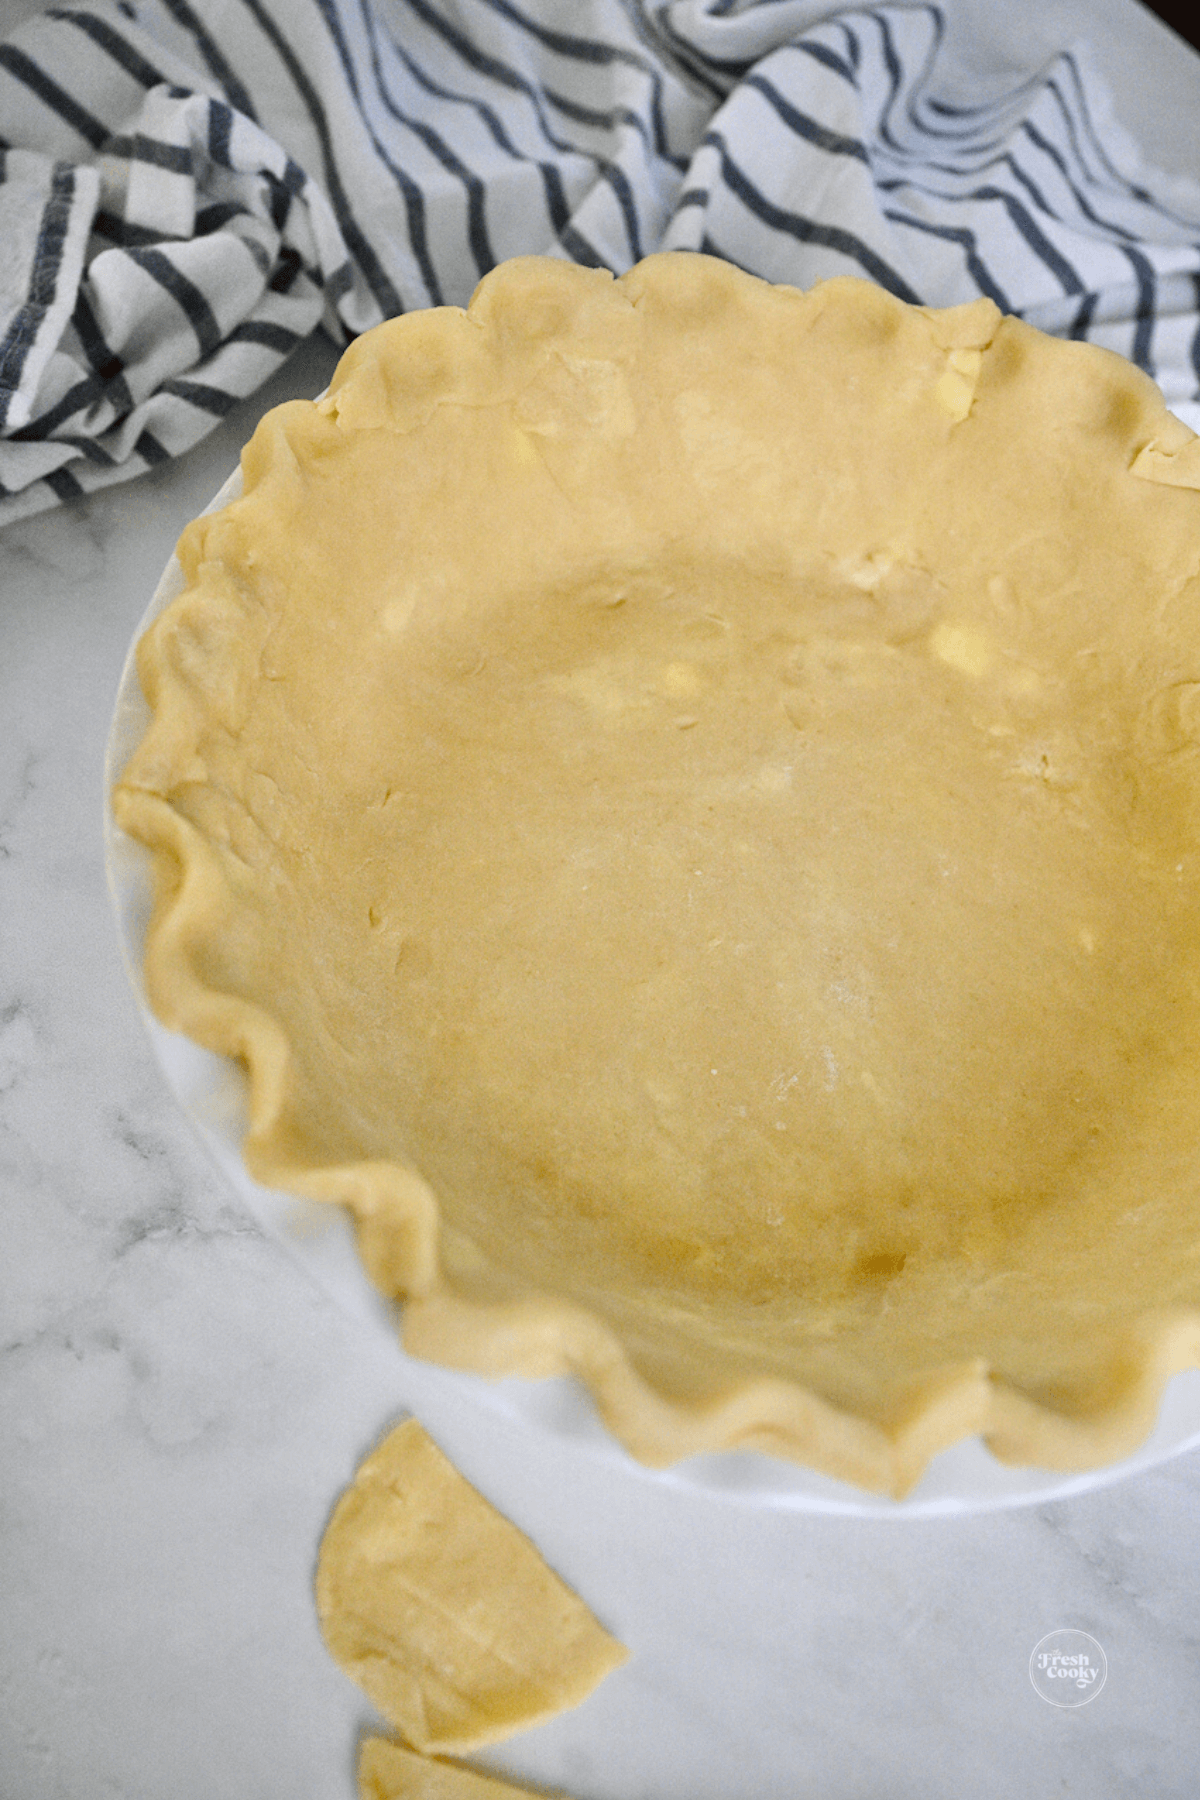 Crimped pie dough.